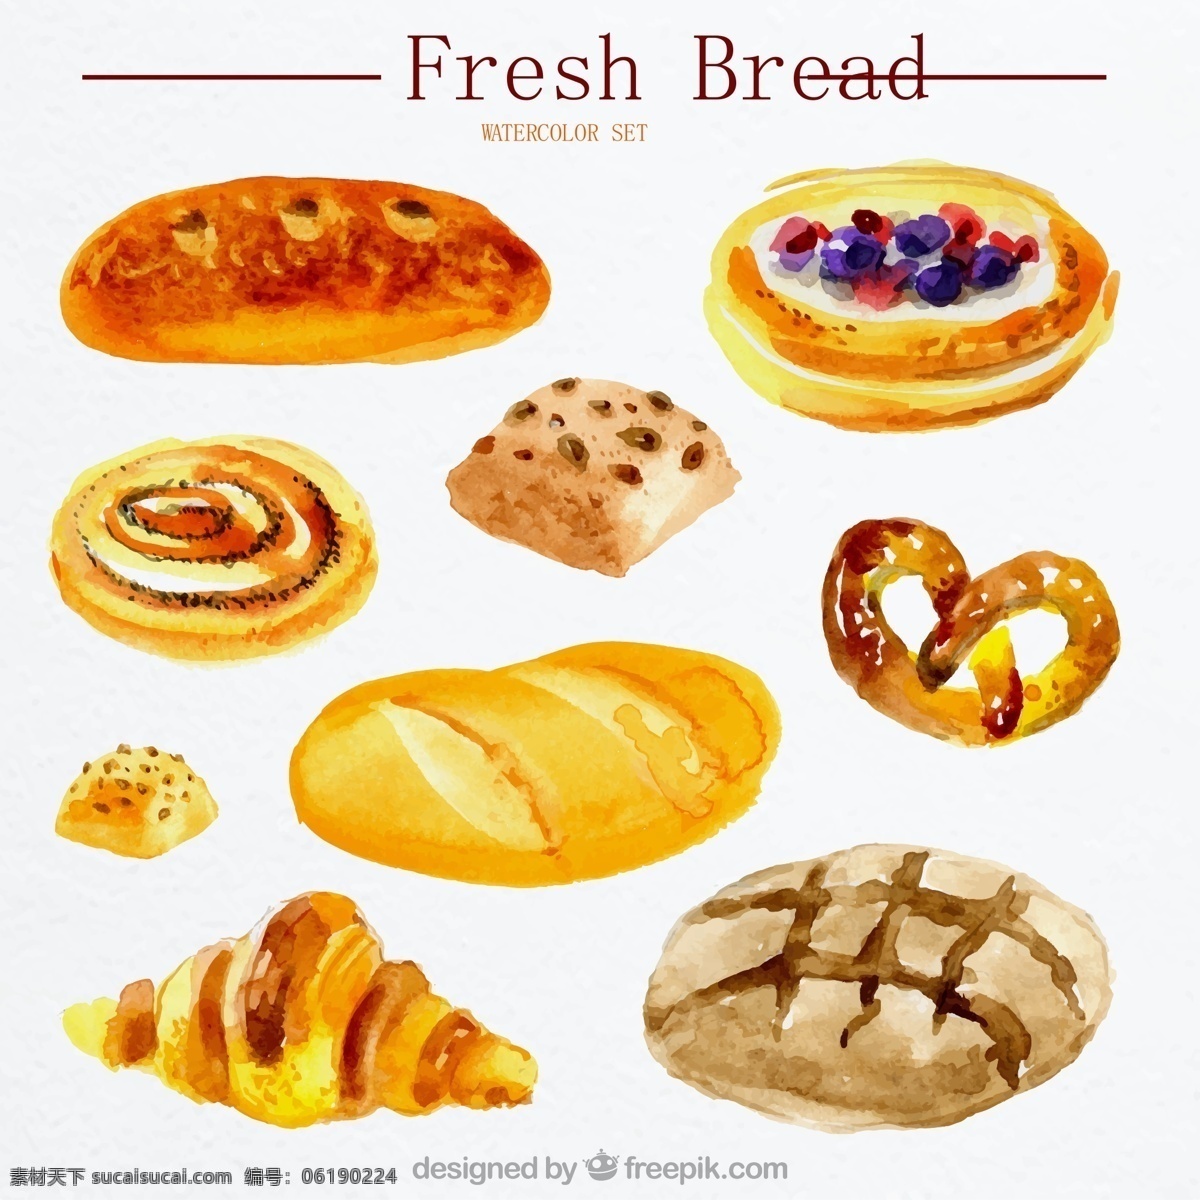 面包矢量图 夹馅面包 水果面包 全麦面包 牛角面包 水彩 面包 食物新鲜 烘培食品矢量 餐饮矢量素材